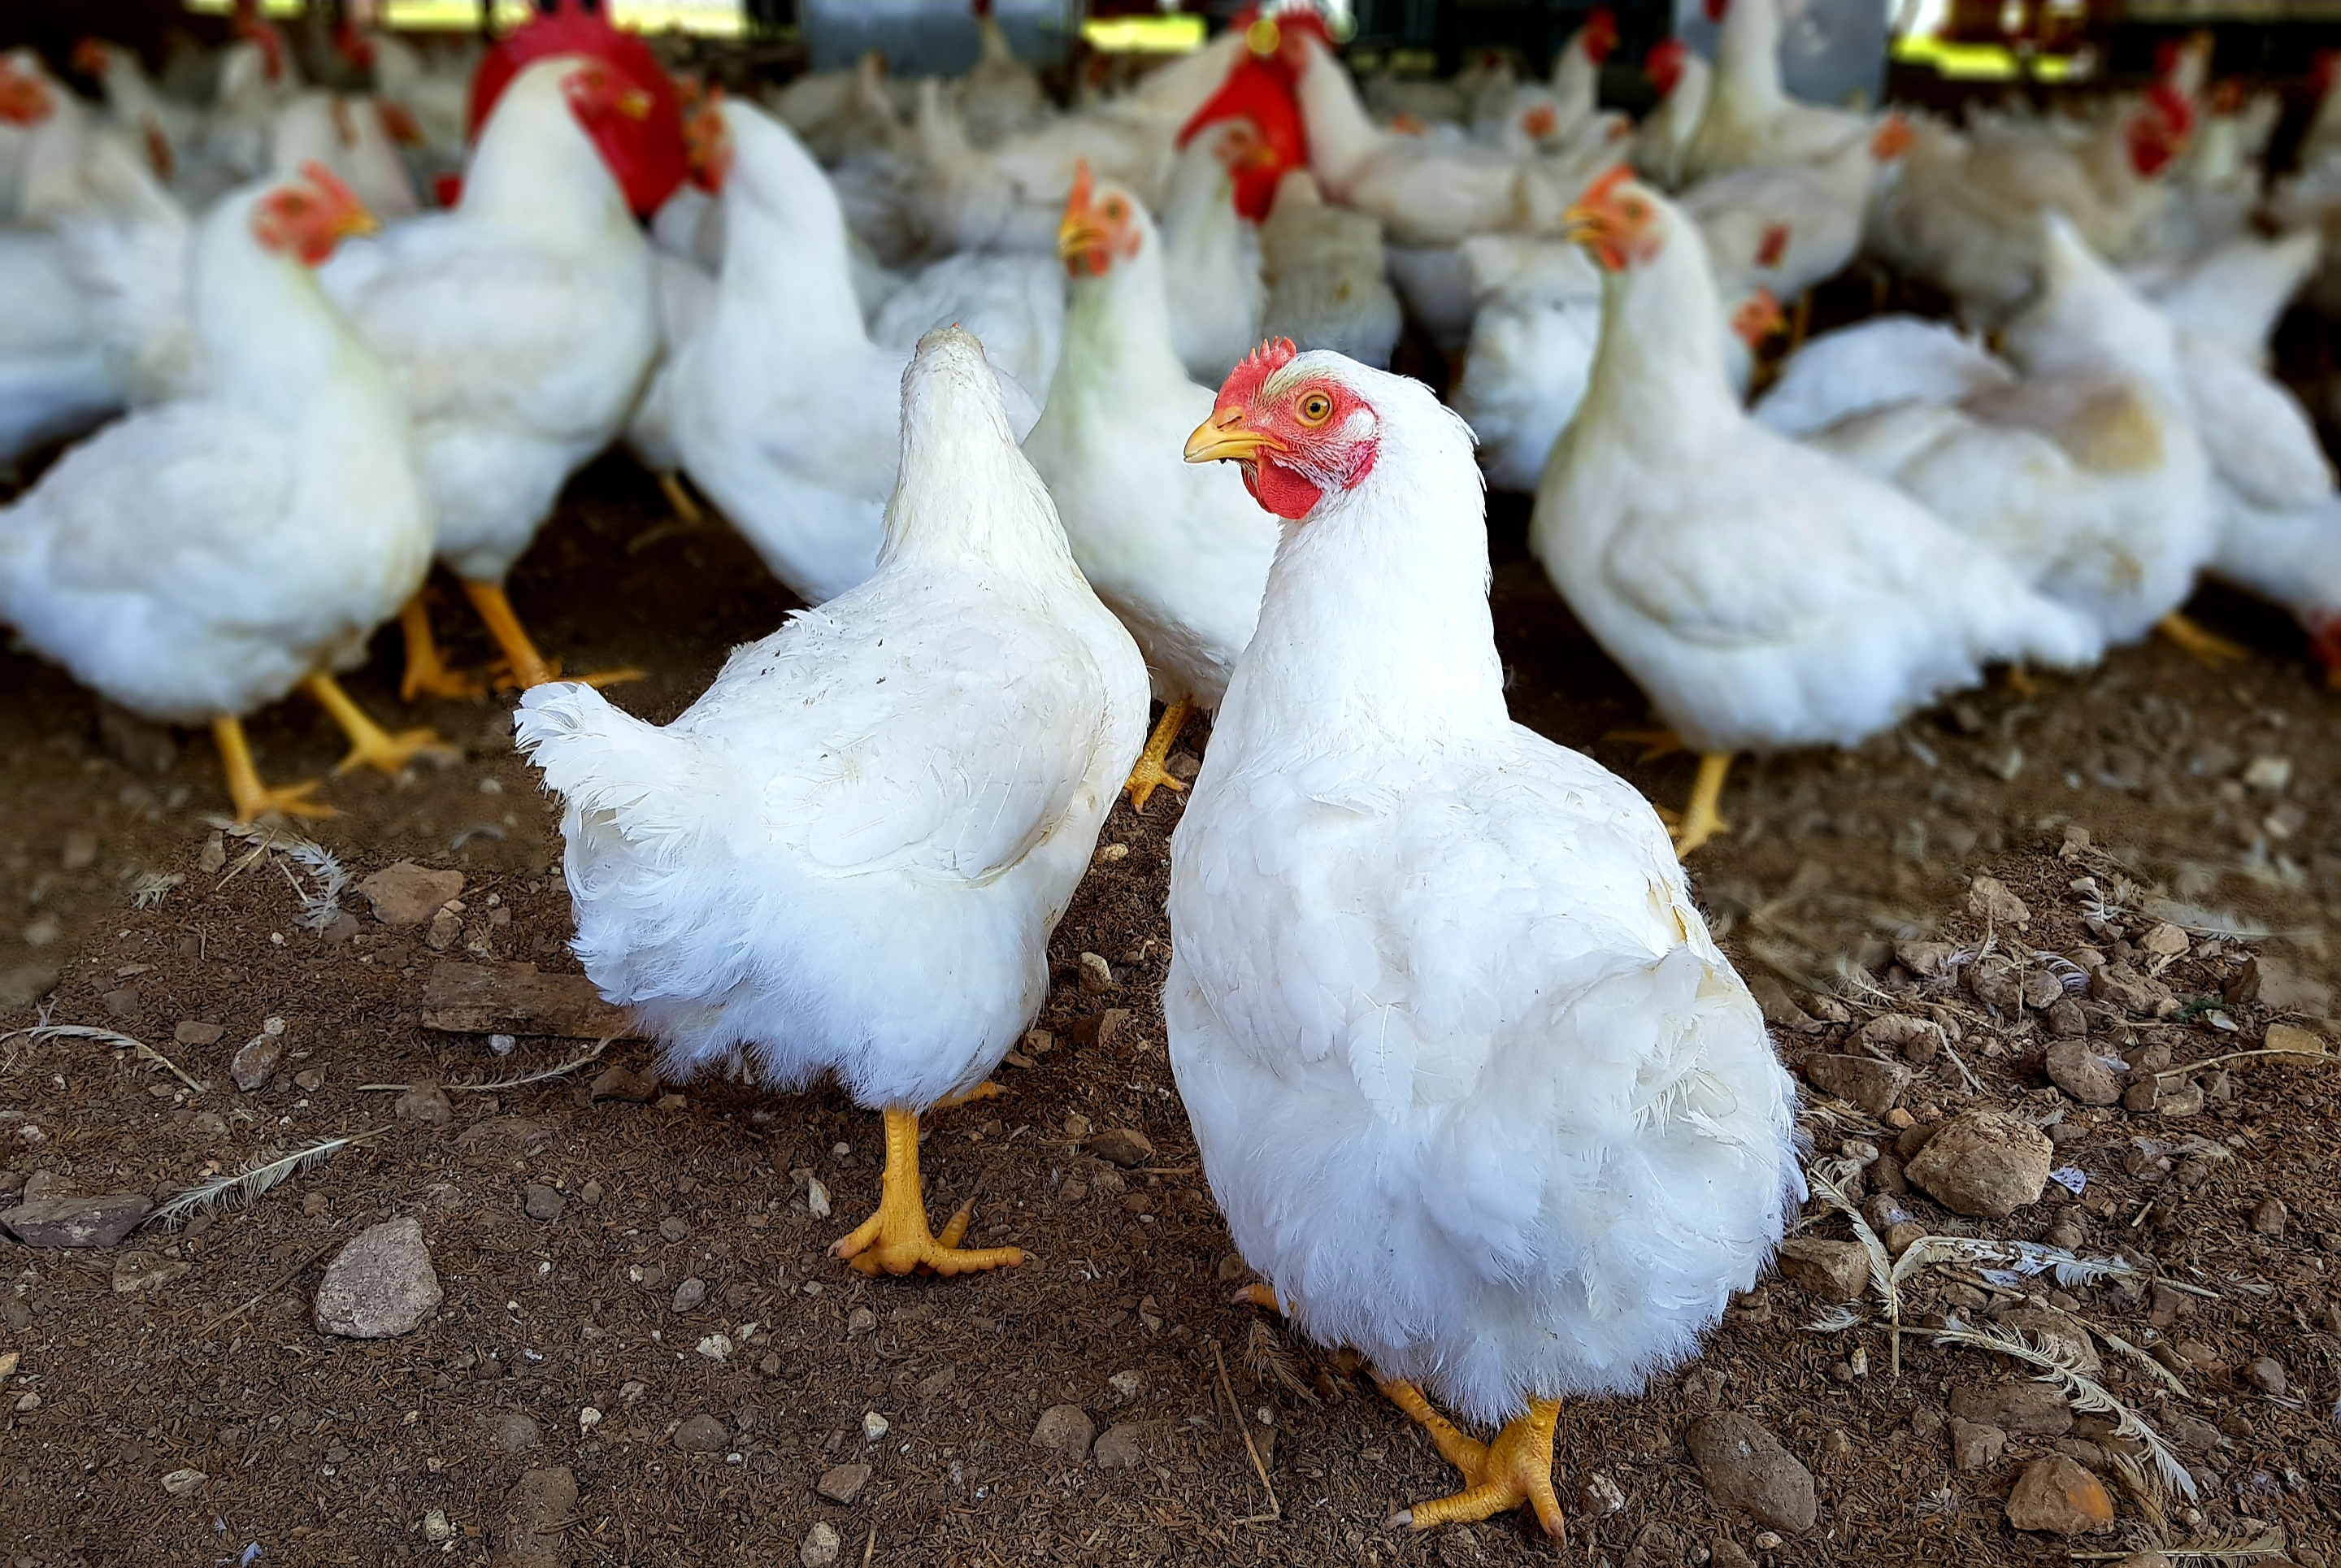 Disponibilidad de nutrientes de la dieta en pollos